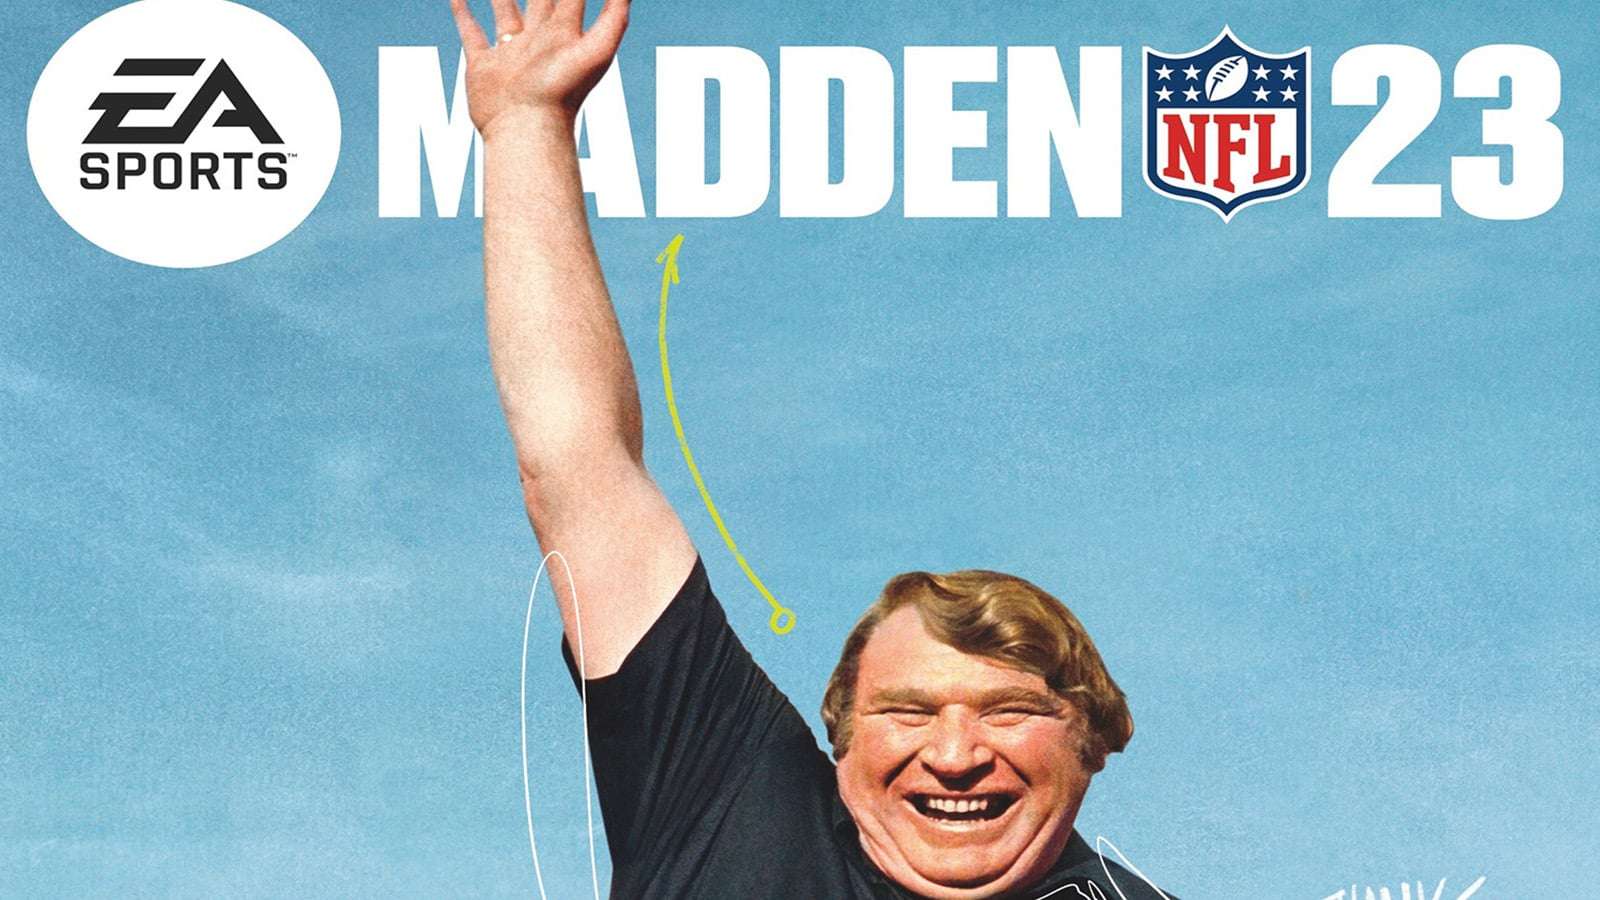 Madden 23 cover art